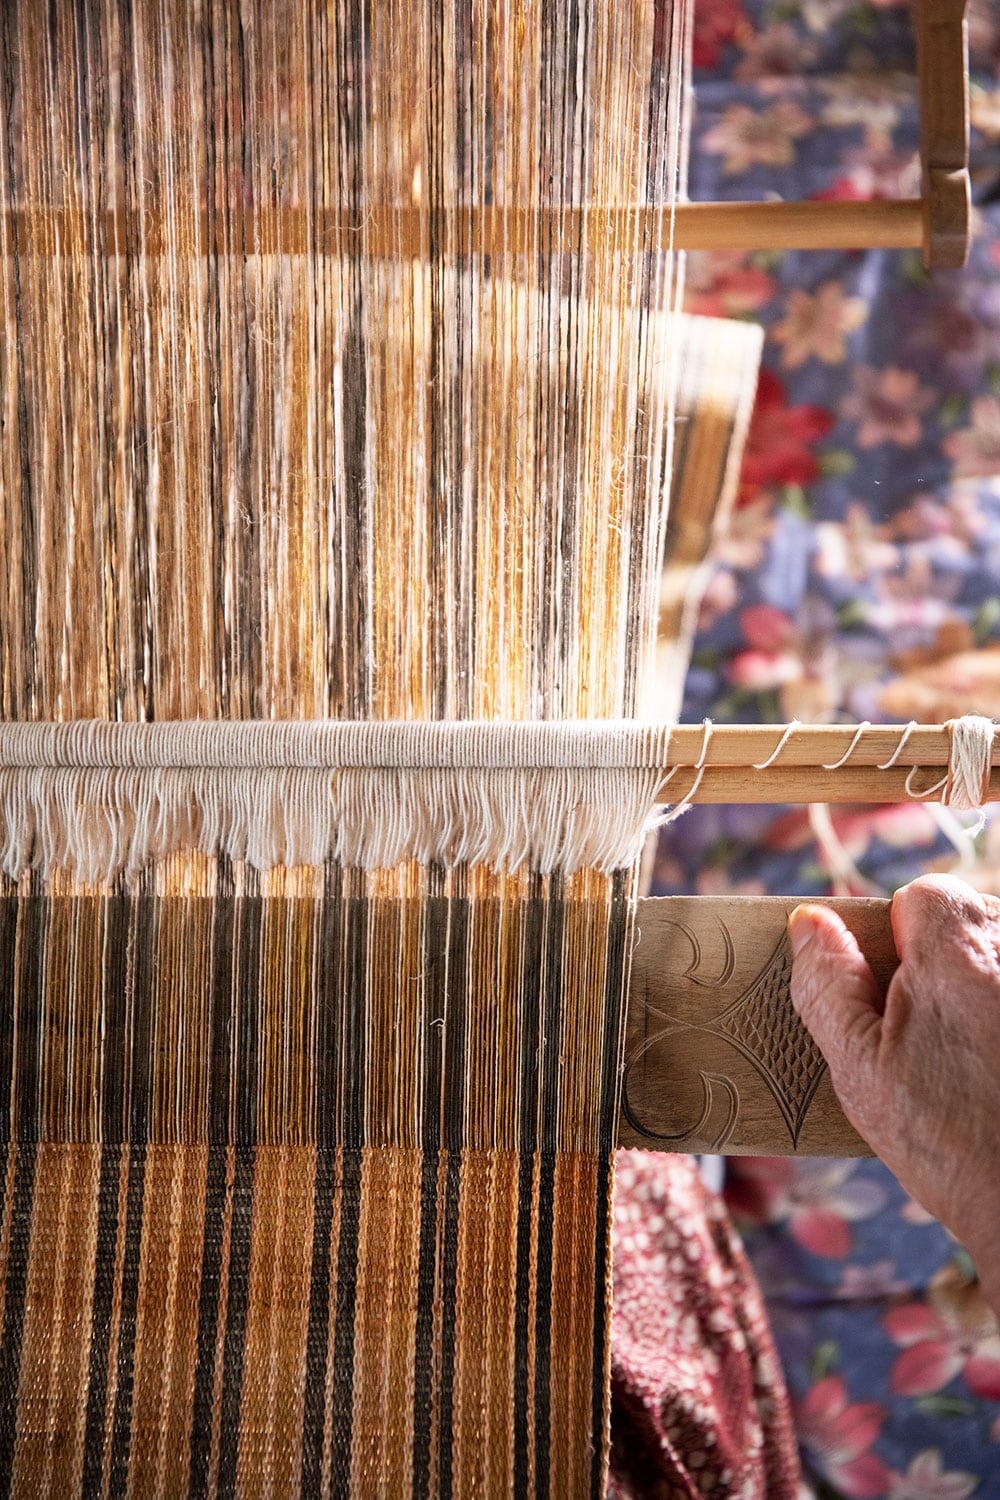 昔と変わることなく“アットゥシカラペ(機織り機)”を使った織り方を守り続ける二風谷アットゥシ。